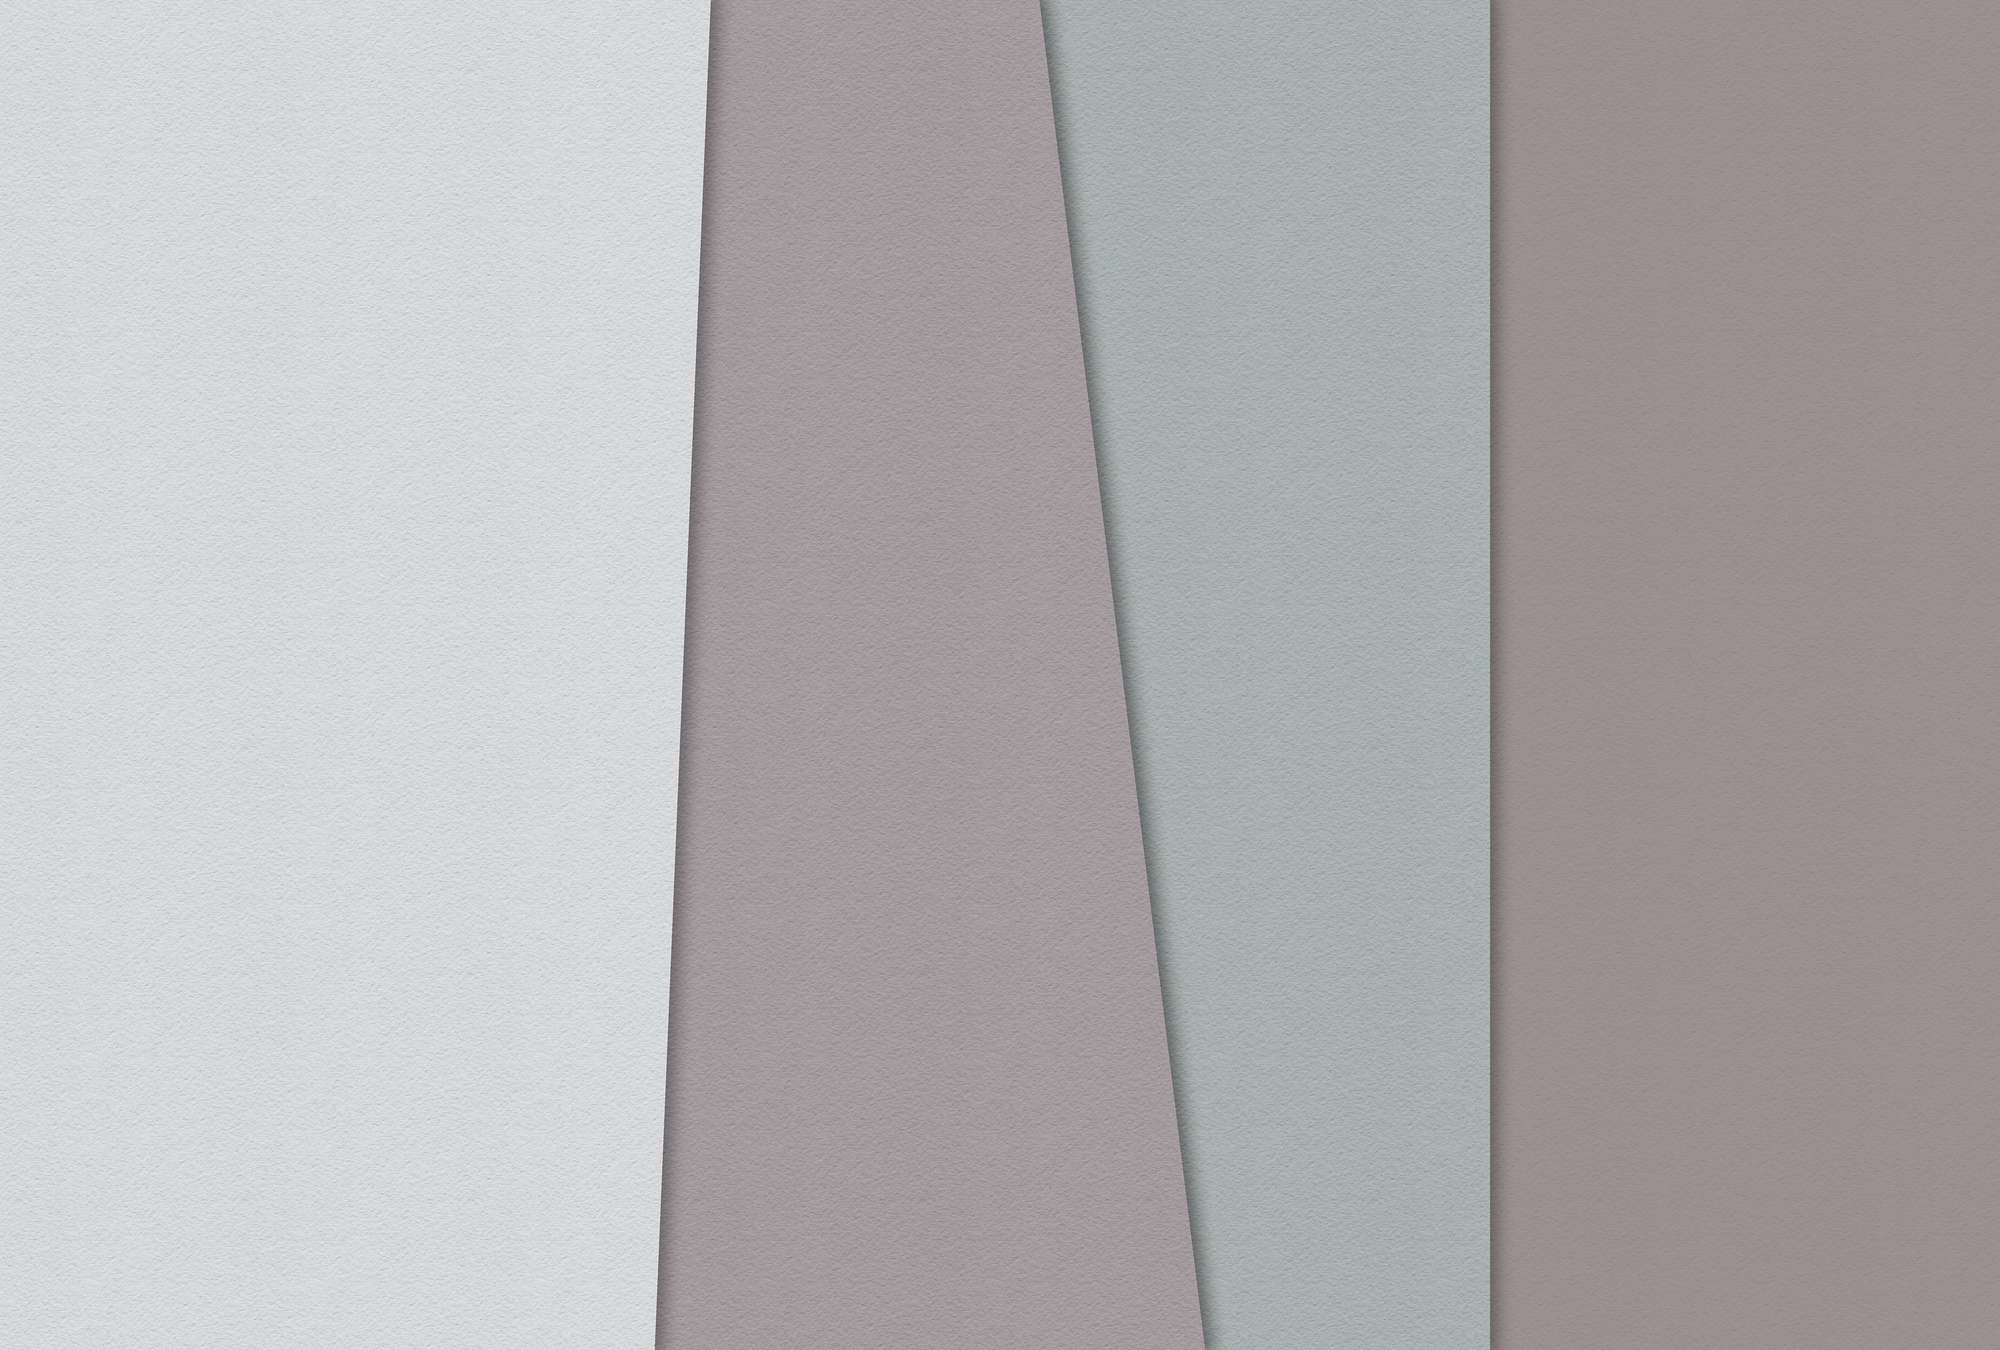             Layered paper 3 - Minimalistische Fototapete Farbfelder-Büttenpapier Struktur – Blau, Creme | Struktur Vlies
        